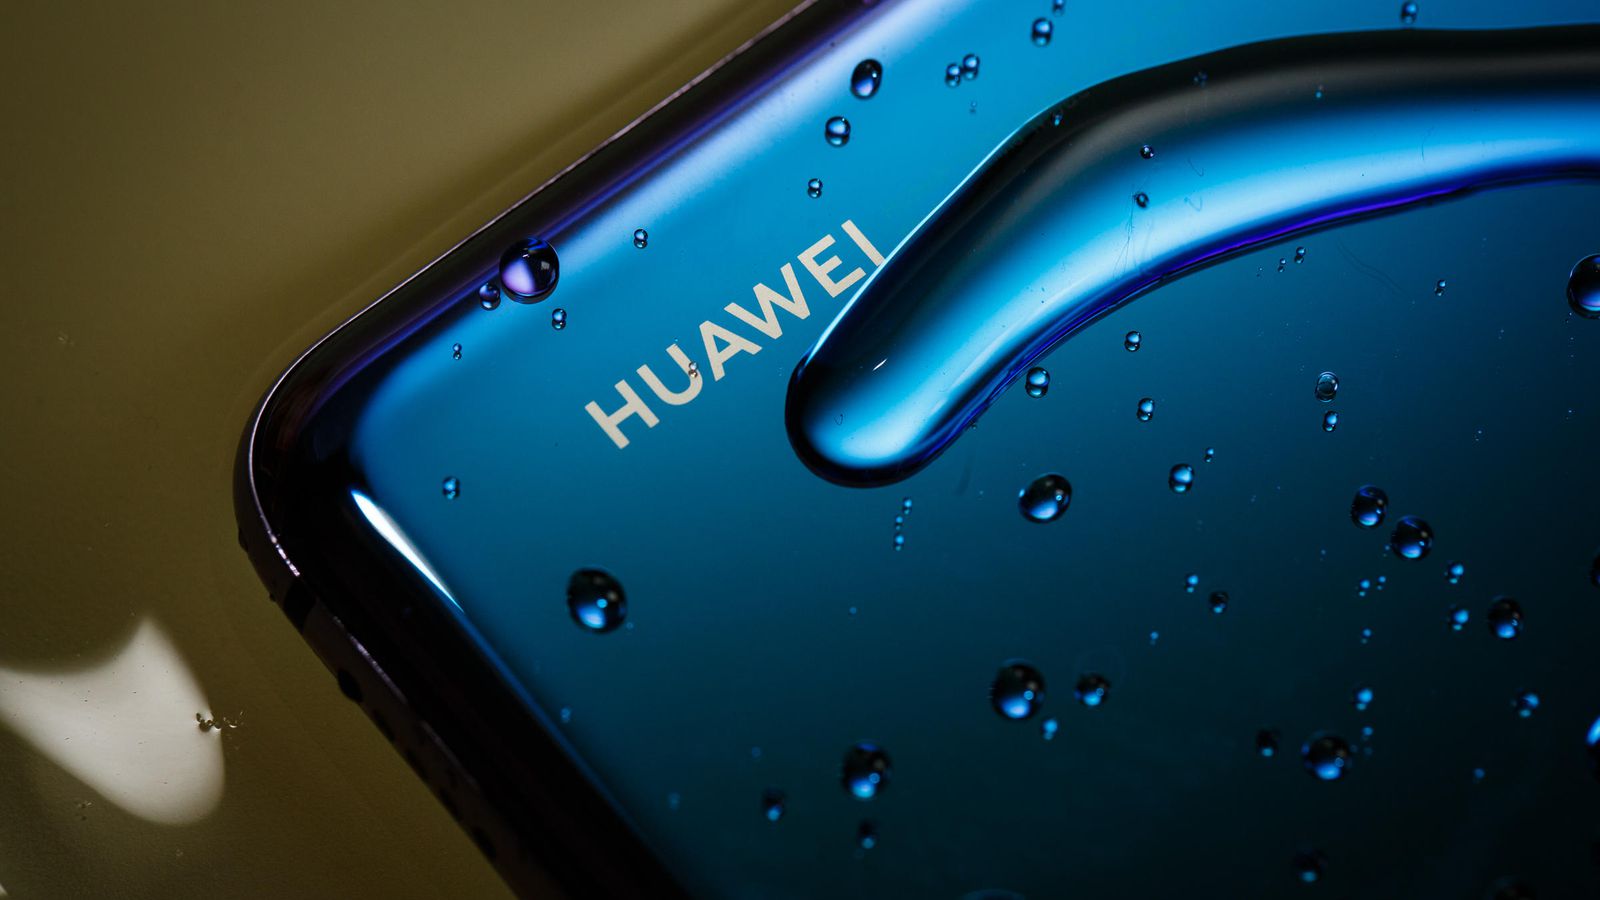 Huawei prépare son propre smartphone pliable, prévu pour novembre